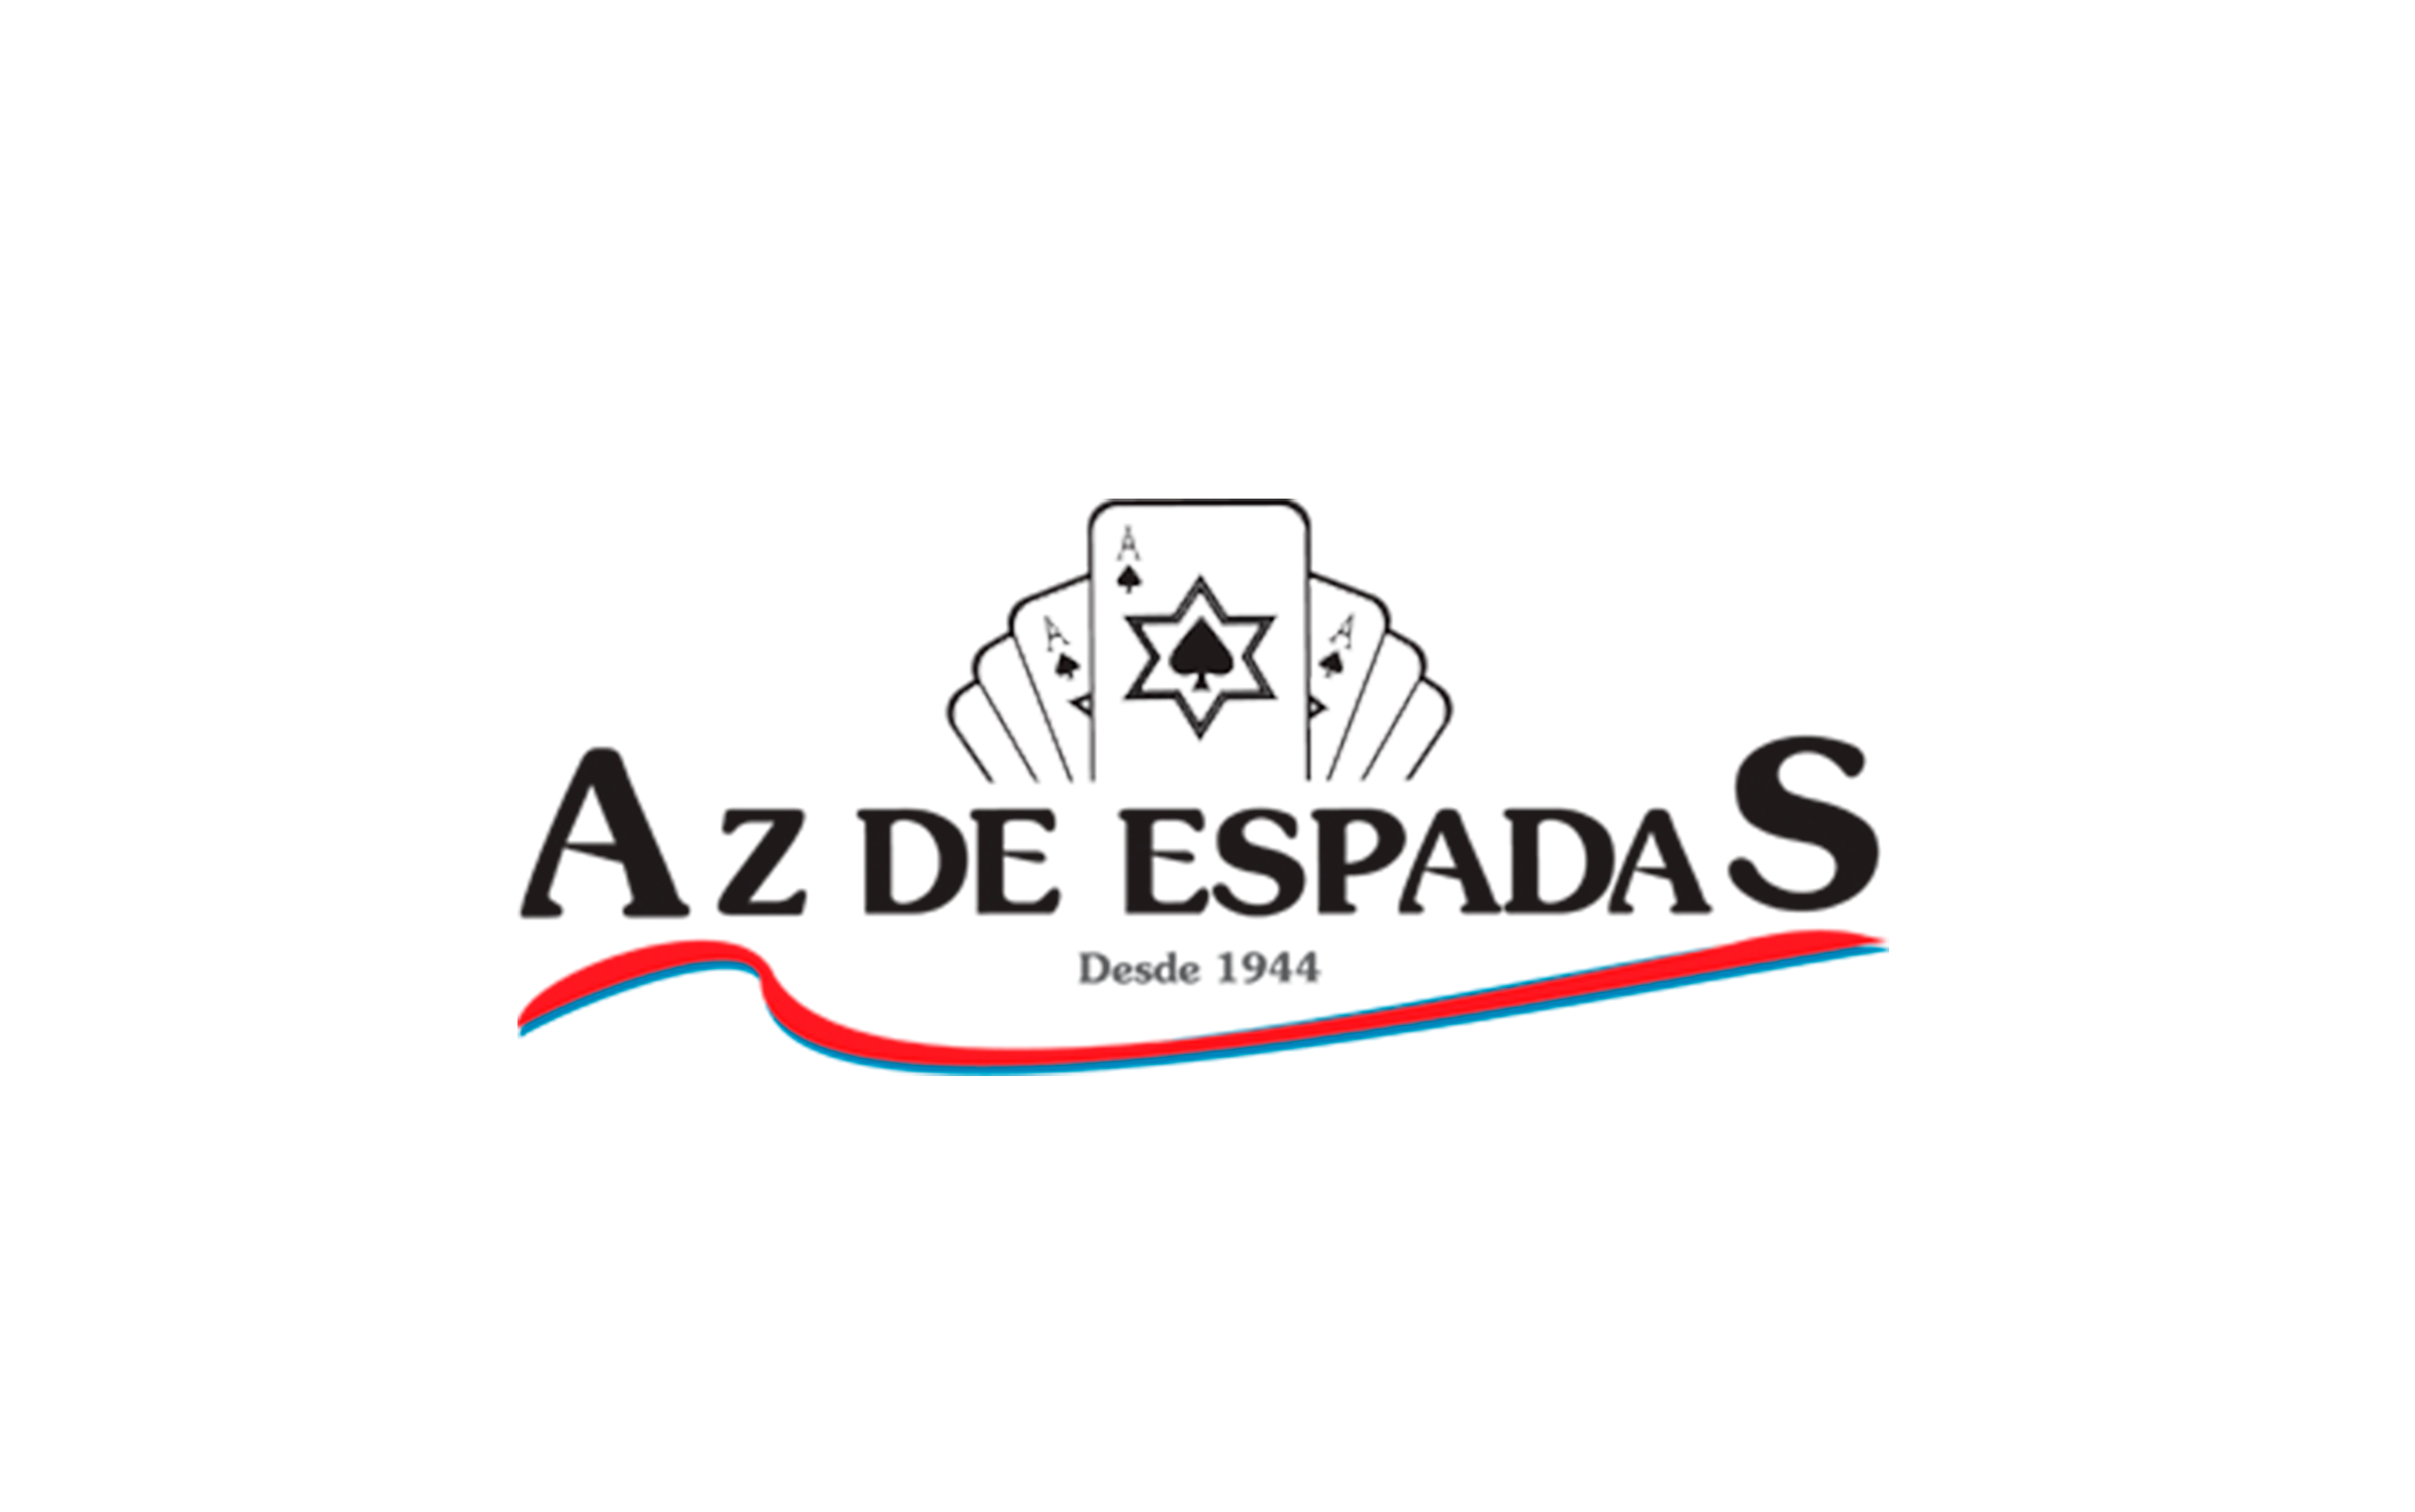 (c) Azdeespadas.com.br